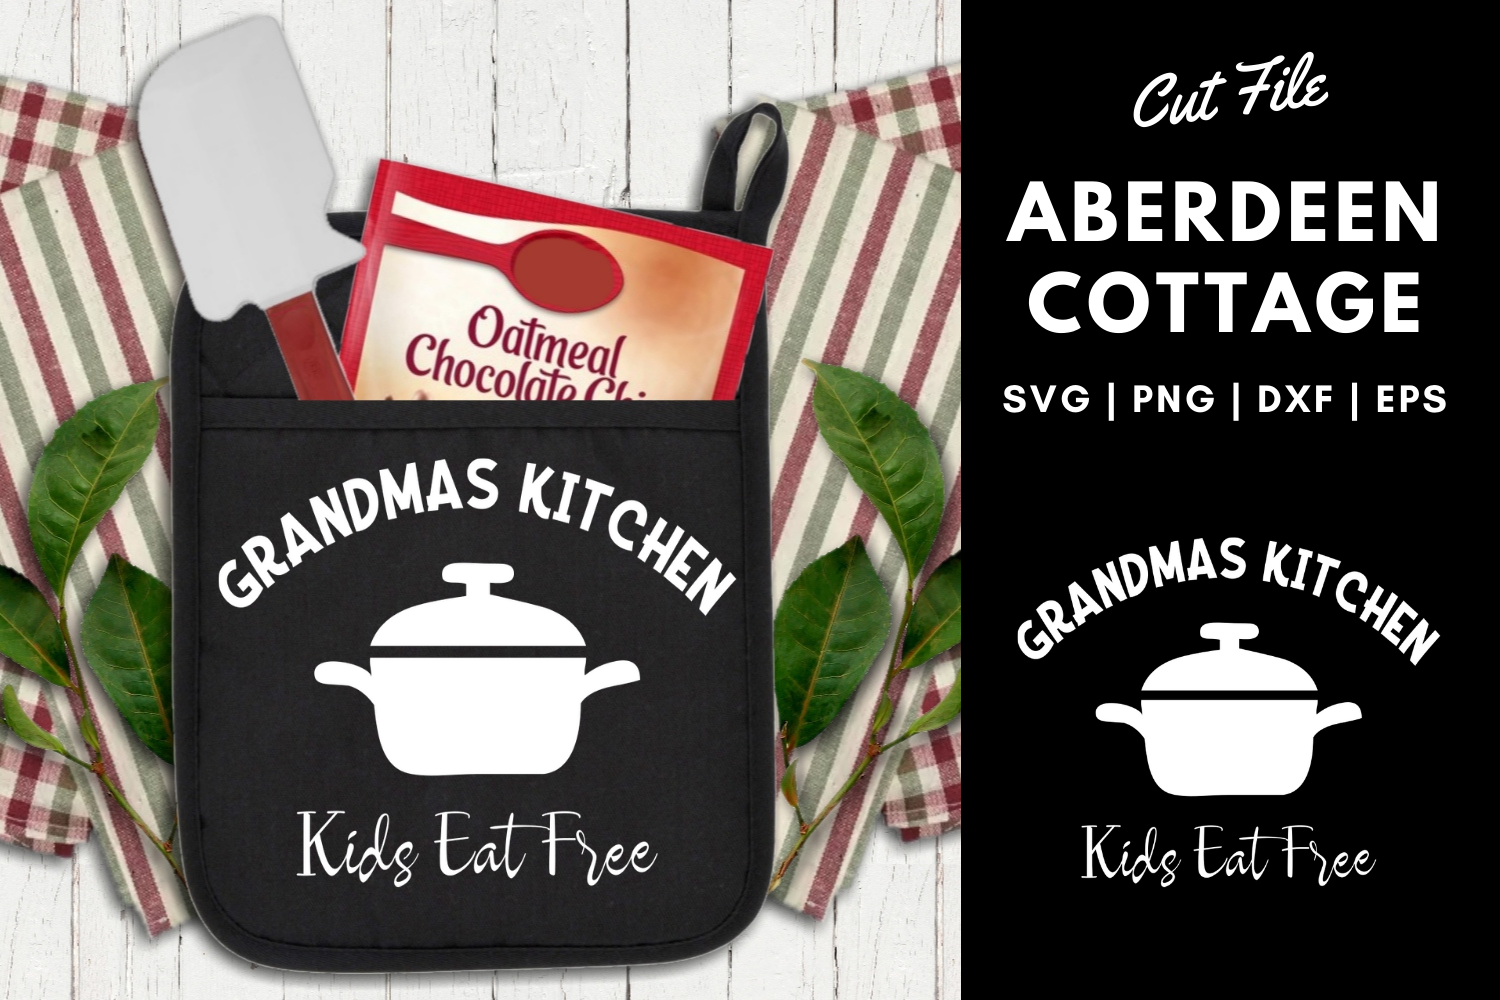 Download Grandmas Kitchen Kids Eat Free Pot Holder SVG| PNG | EPS